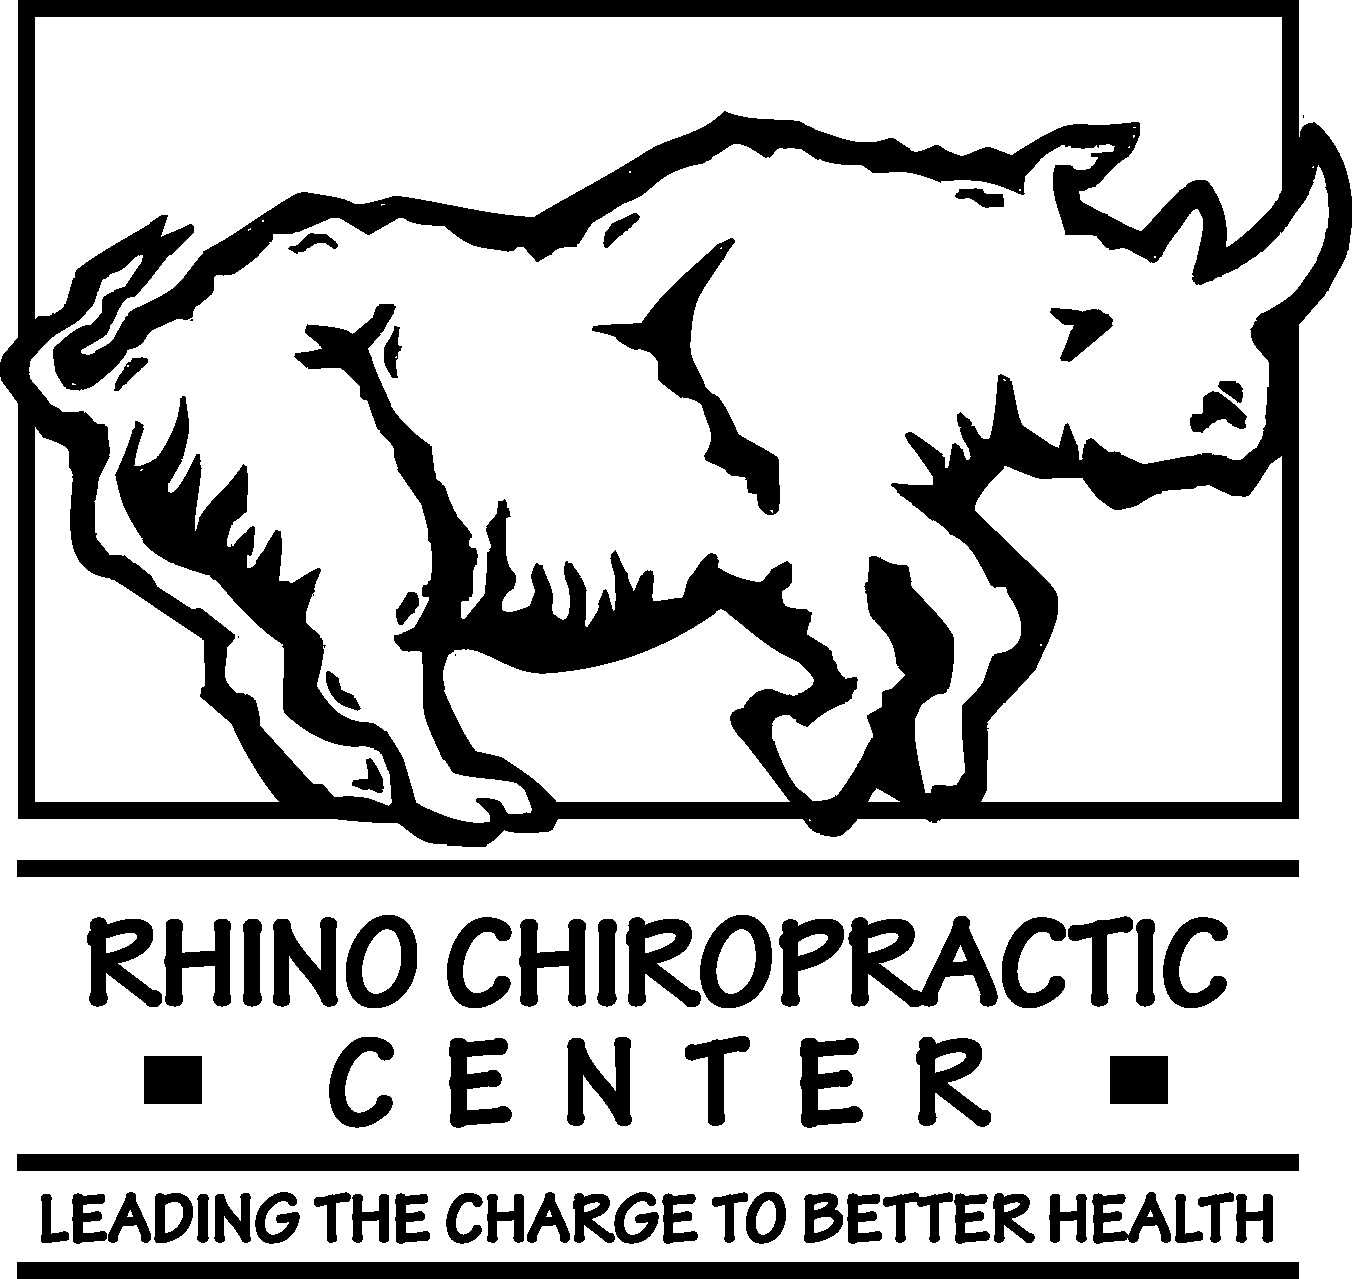 Rhino Chiropractic Center